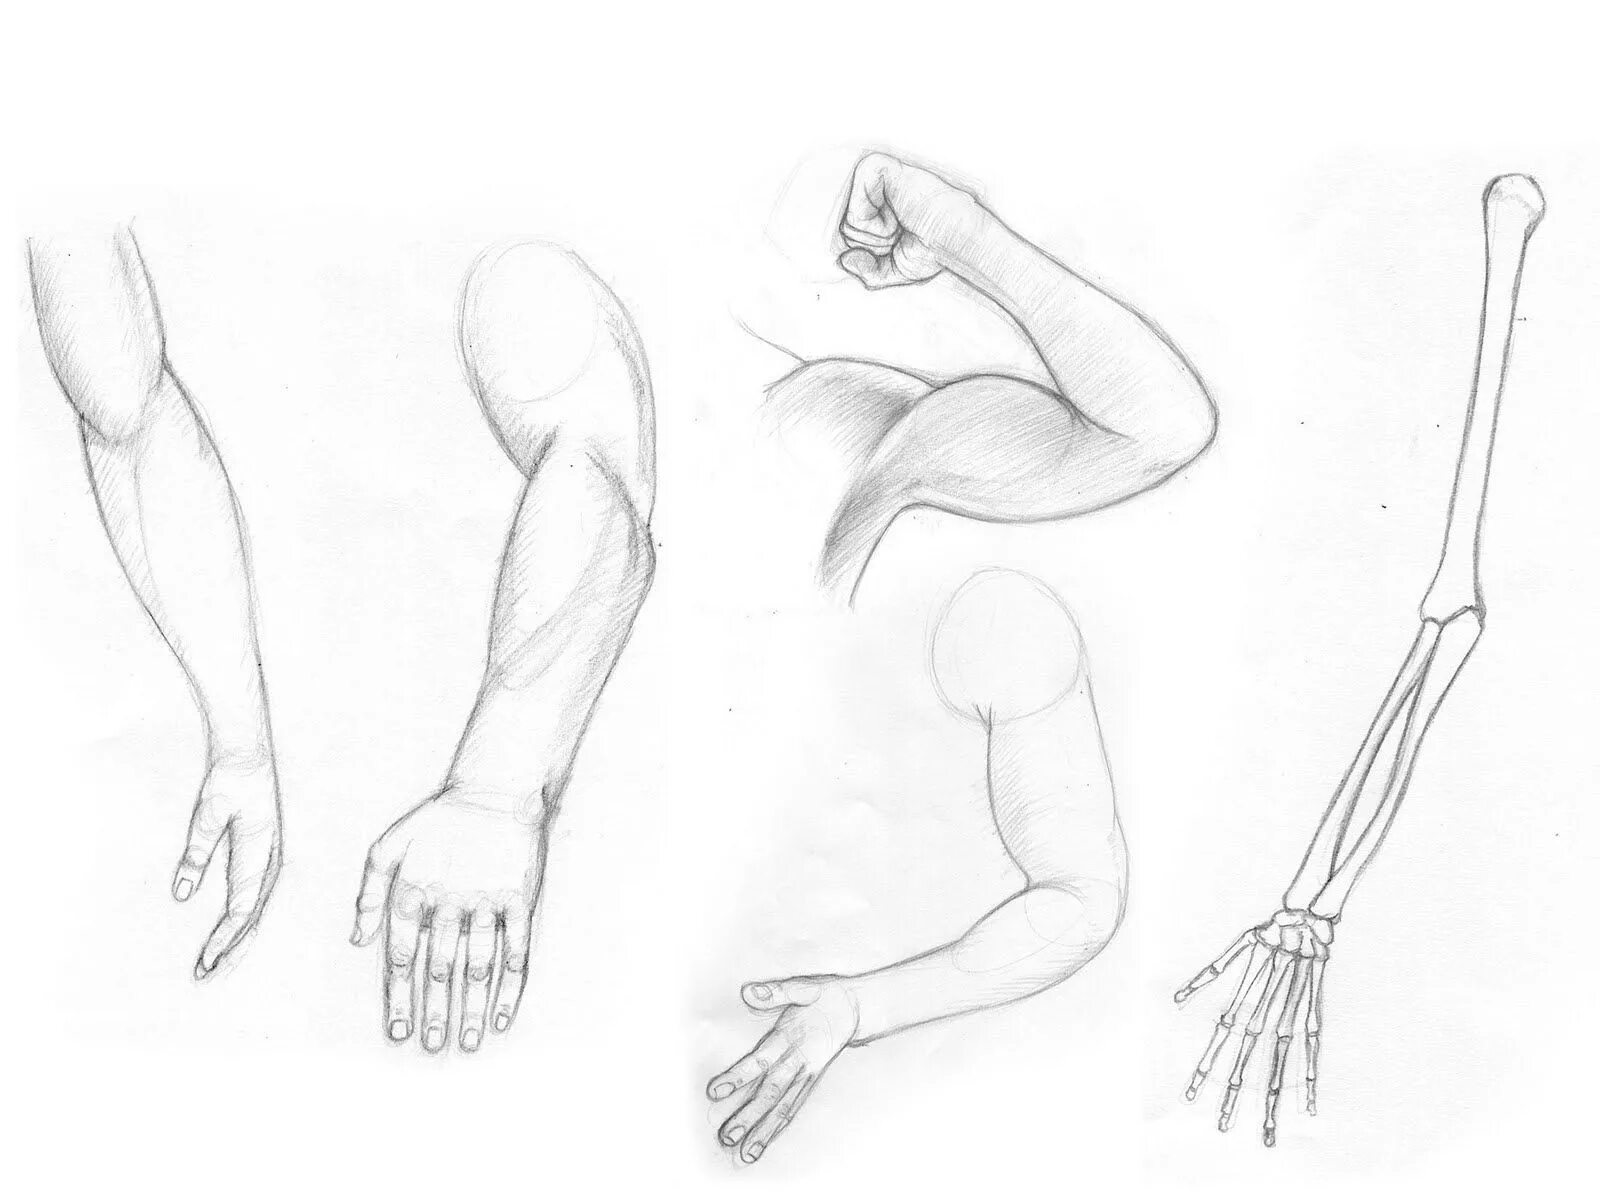 Рисование руки человека. Анатомия рук для рисования. Руки для рисования от плеча. Рисунок руки человека.